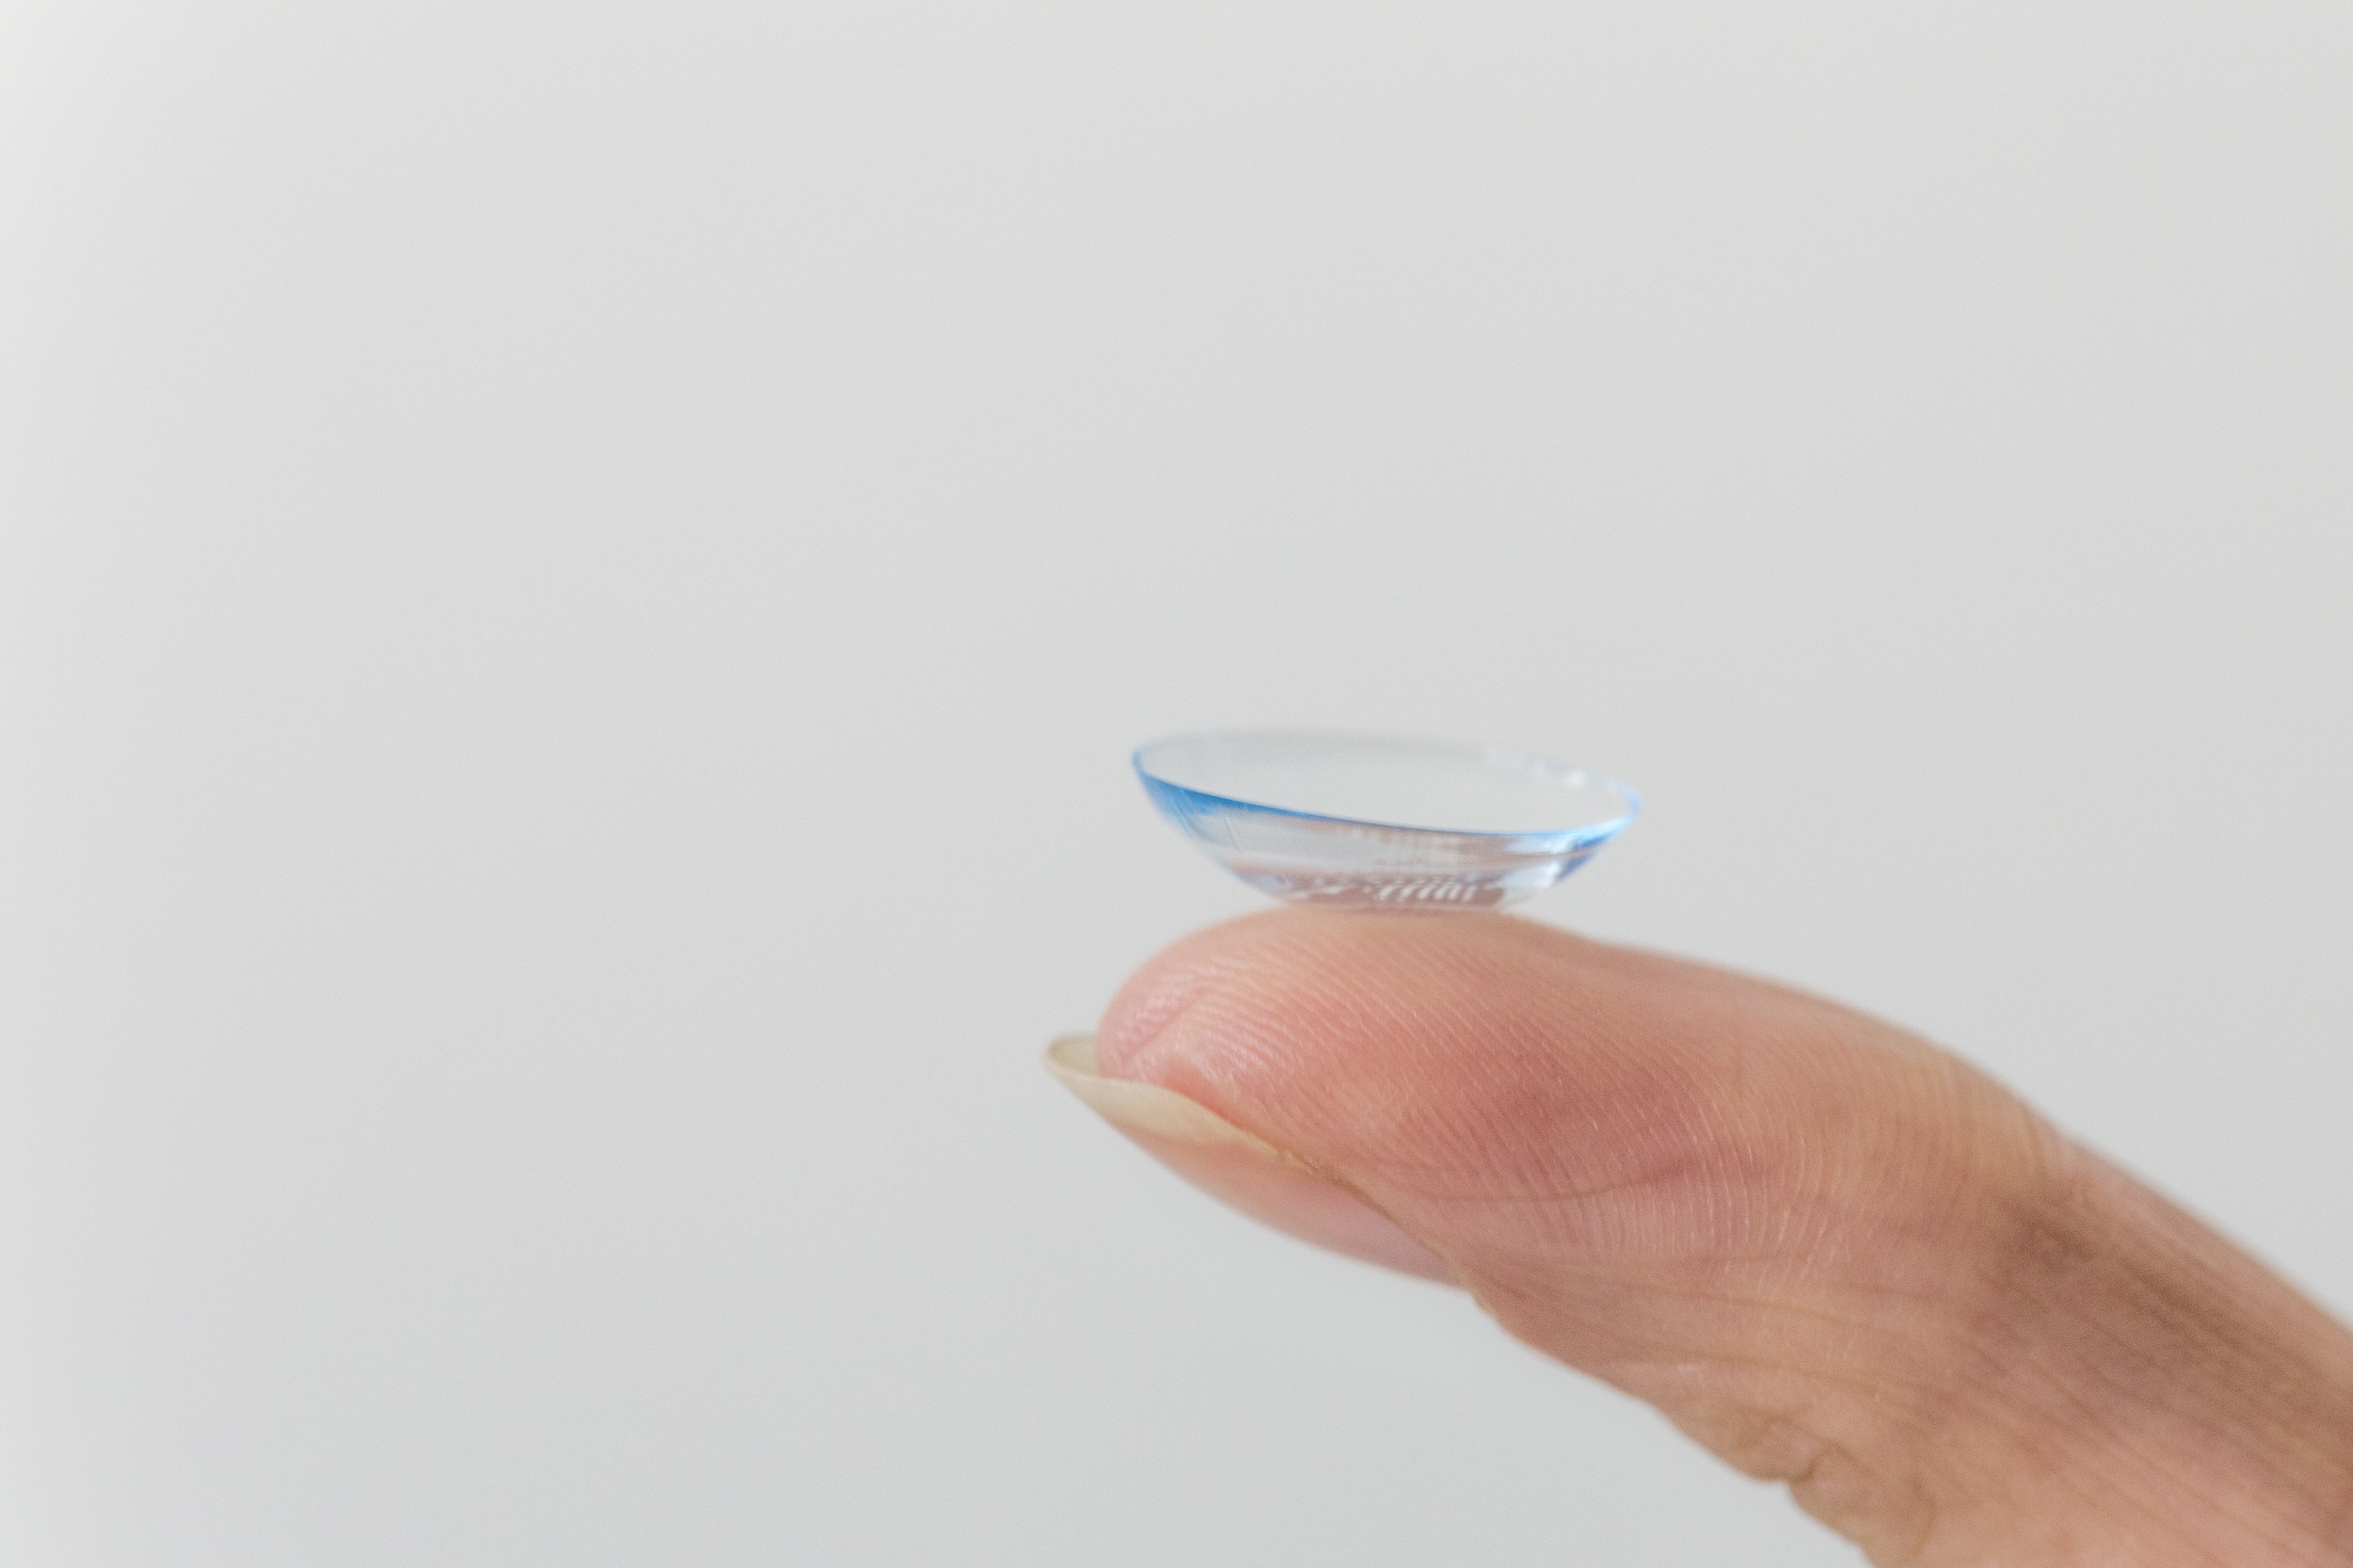 Heuschnupfenzeit: Tipps für Kontaktlinsenträger